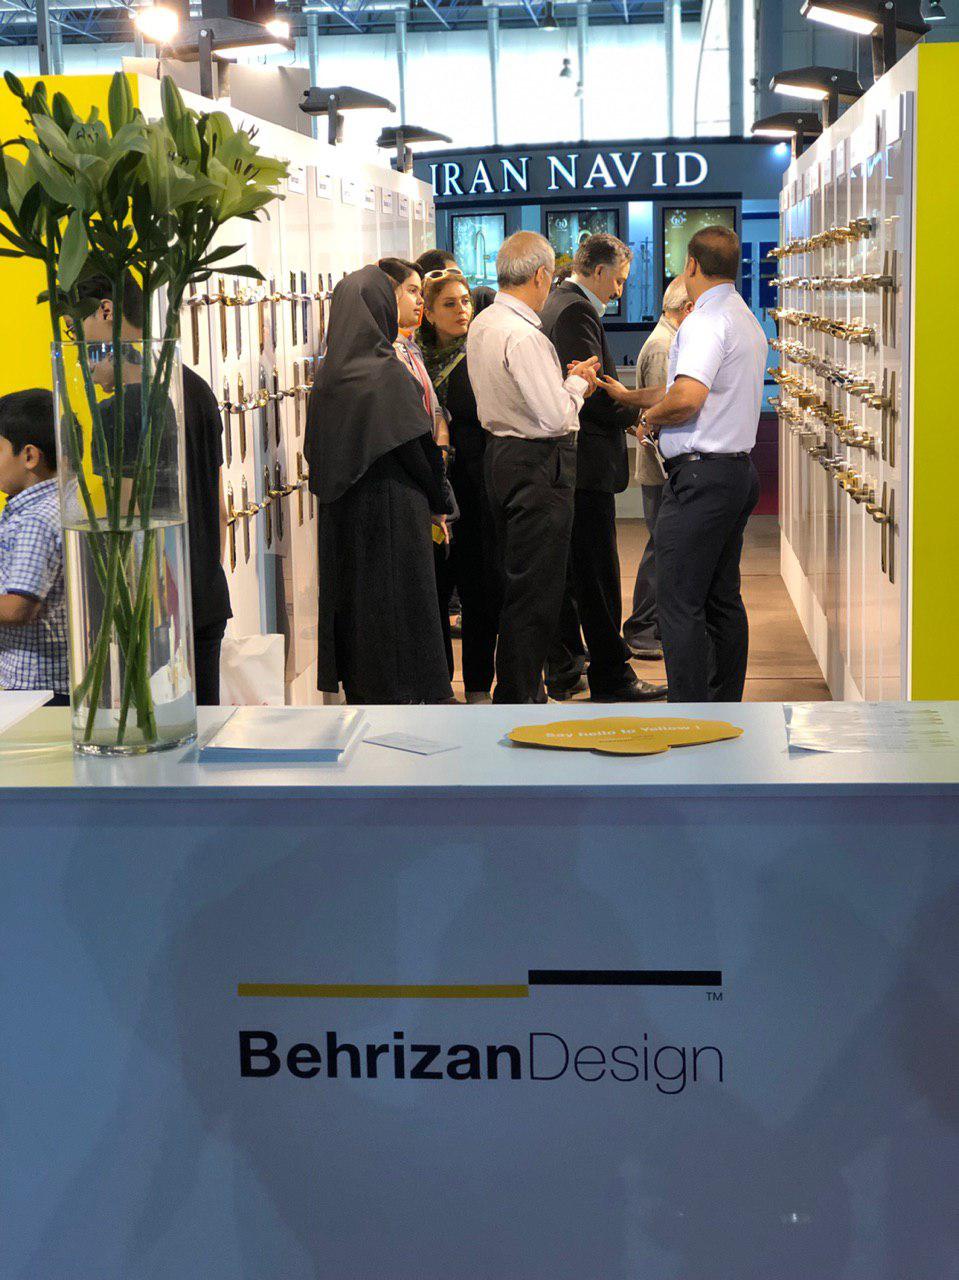 نمایشگاه صنعت ساختمان مشهد